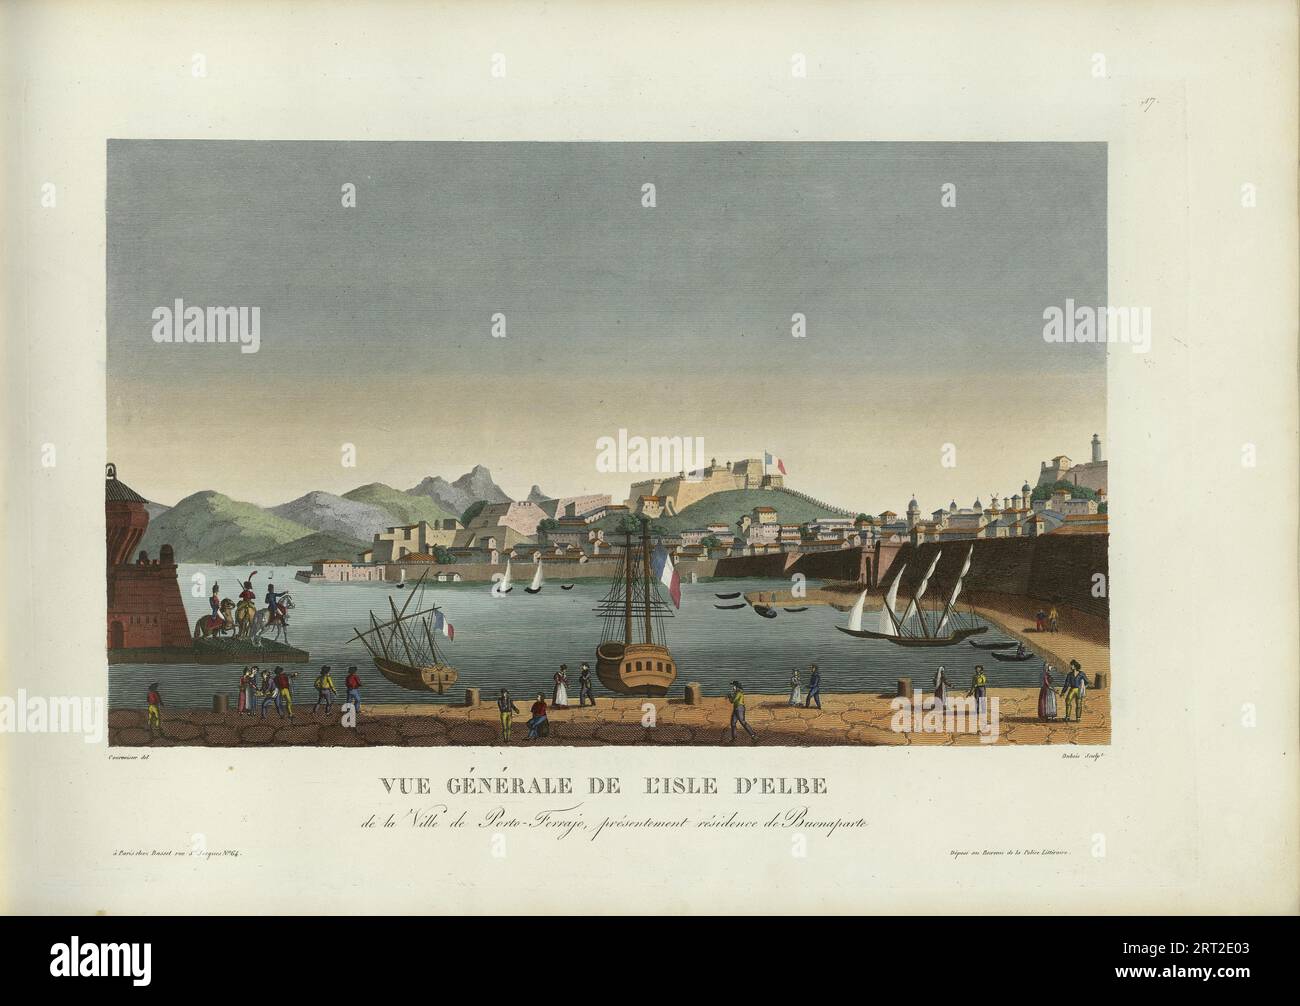 Vue g&#xe9;n&#xe9;rale de l'ile d'Elbe, de la ville de Porto-Ferrajo, pr&#xe9;sentement r&#xe9;sidence..., 1817-1824. Private Collection. Stock Photo